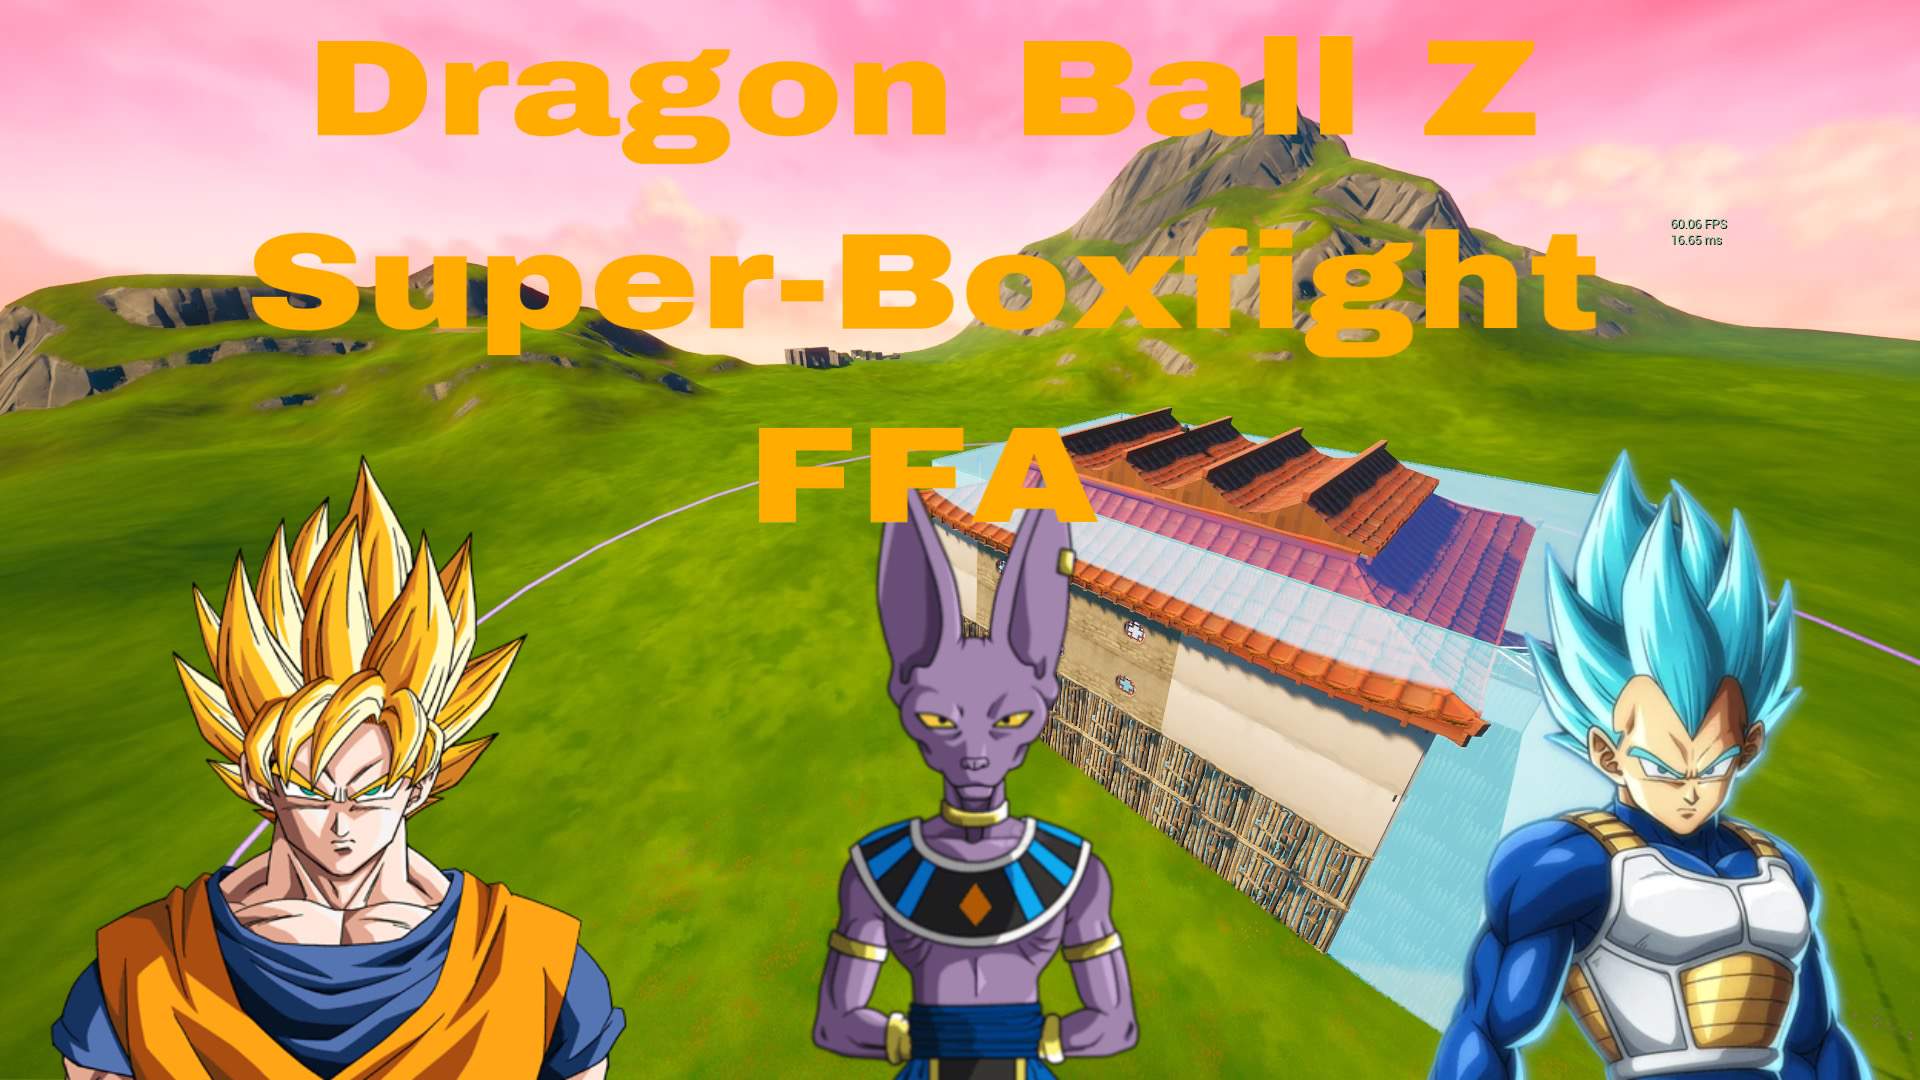 Dragon Ball Z Super-Boxfight FFA